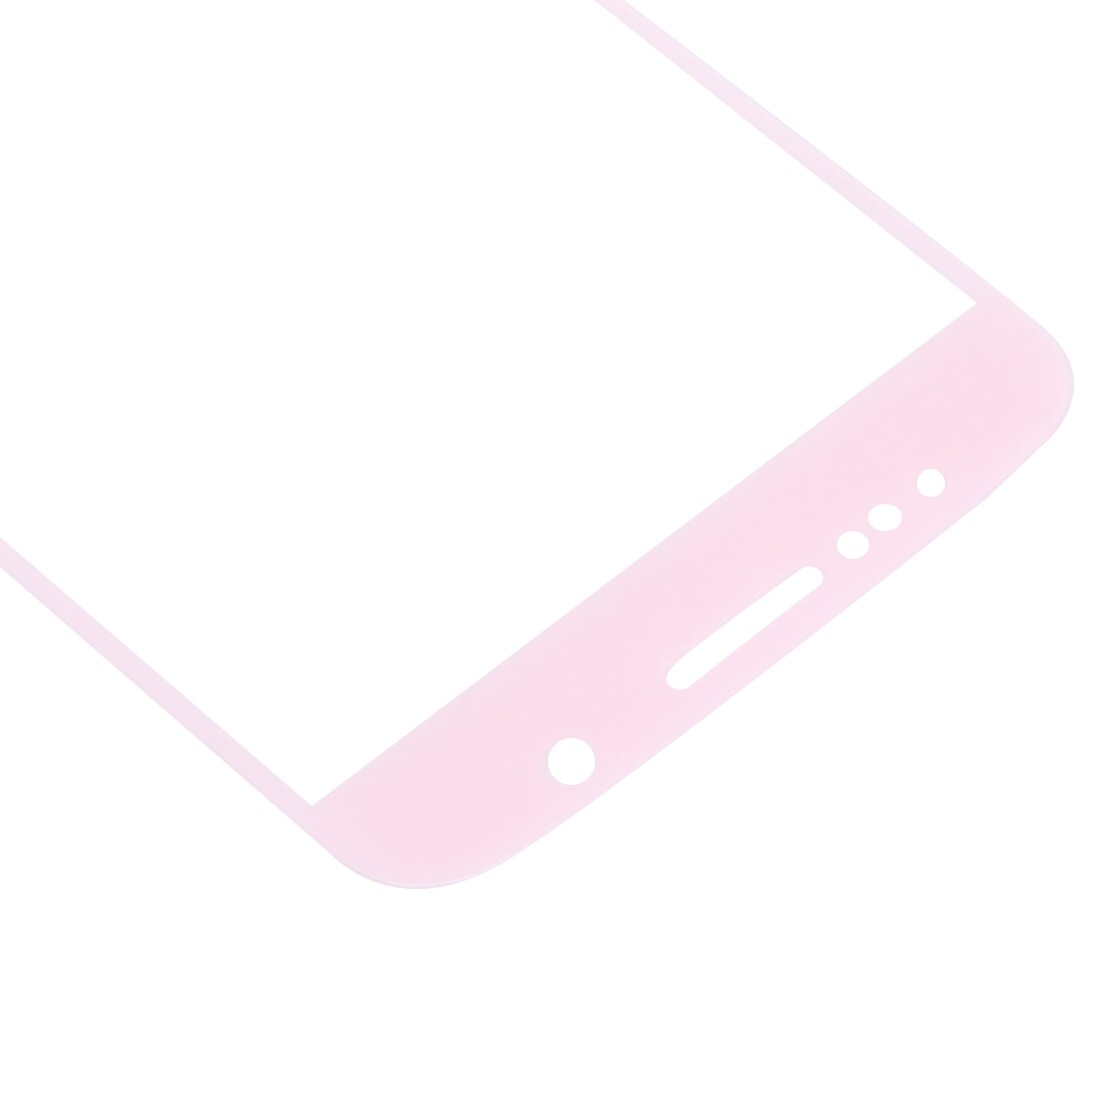 Härdat glasskydd Samsung Galaxy S6 i rosa